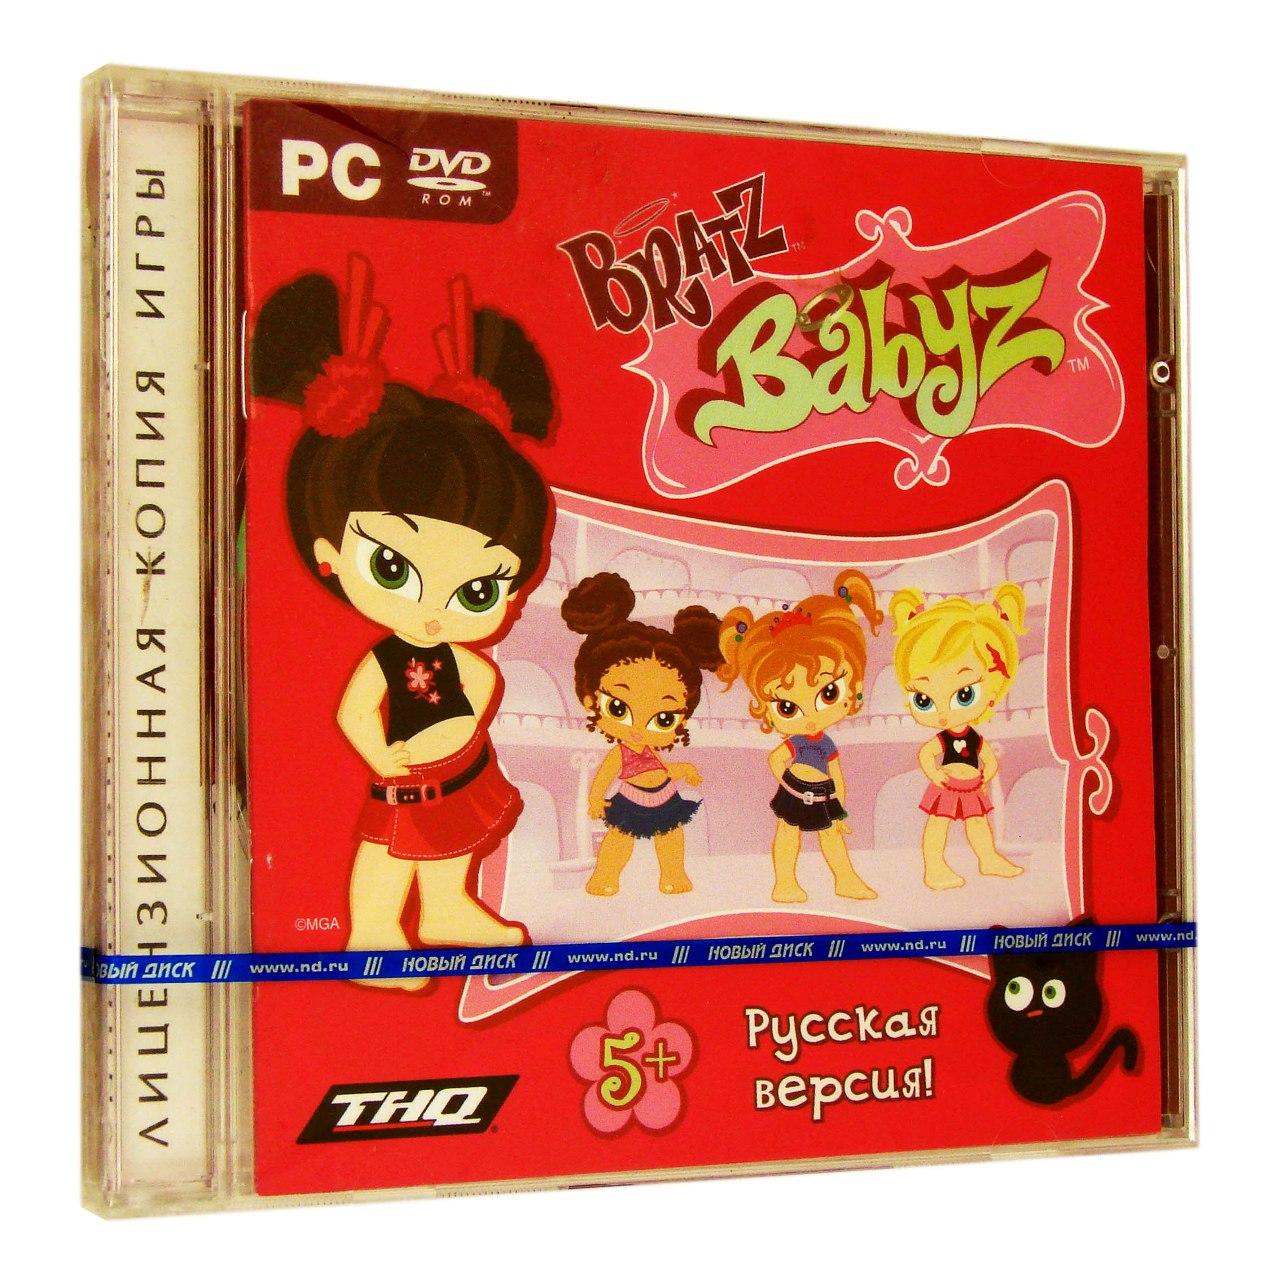 Компьютерный компакт-диск Bratz Babyz (PC), фирма "Новый Диск", 1DVD